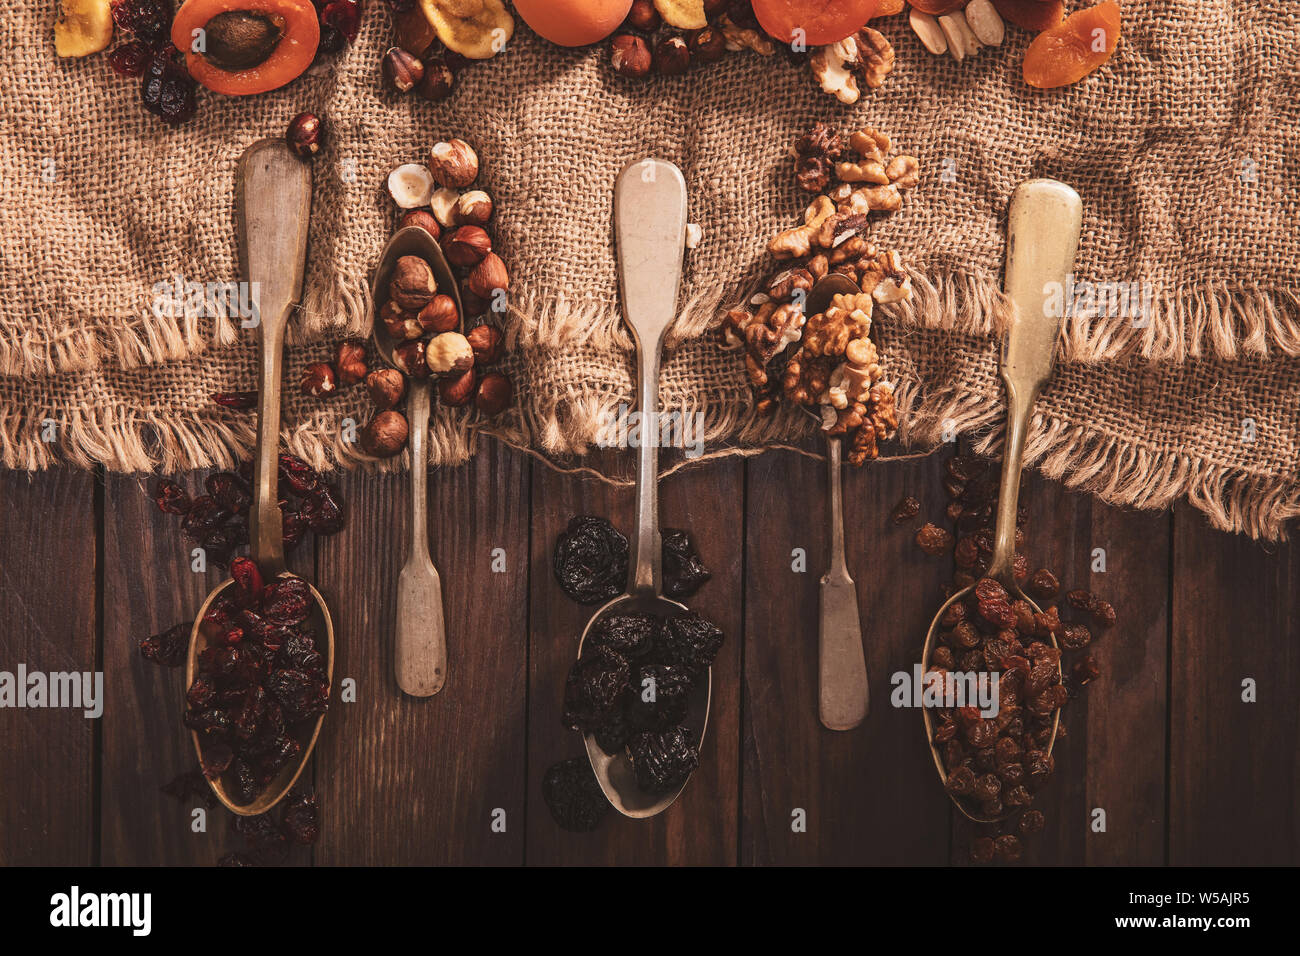 Las frutas secas y las nueces dispuestas en una cuchara, tela y una vieja mesa. Composición horizontal en el viejo estilo. Foto de stock